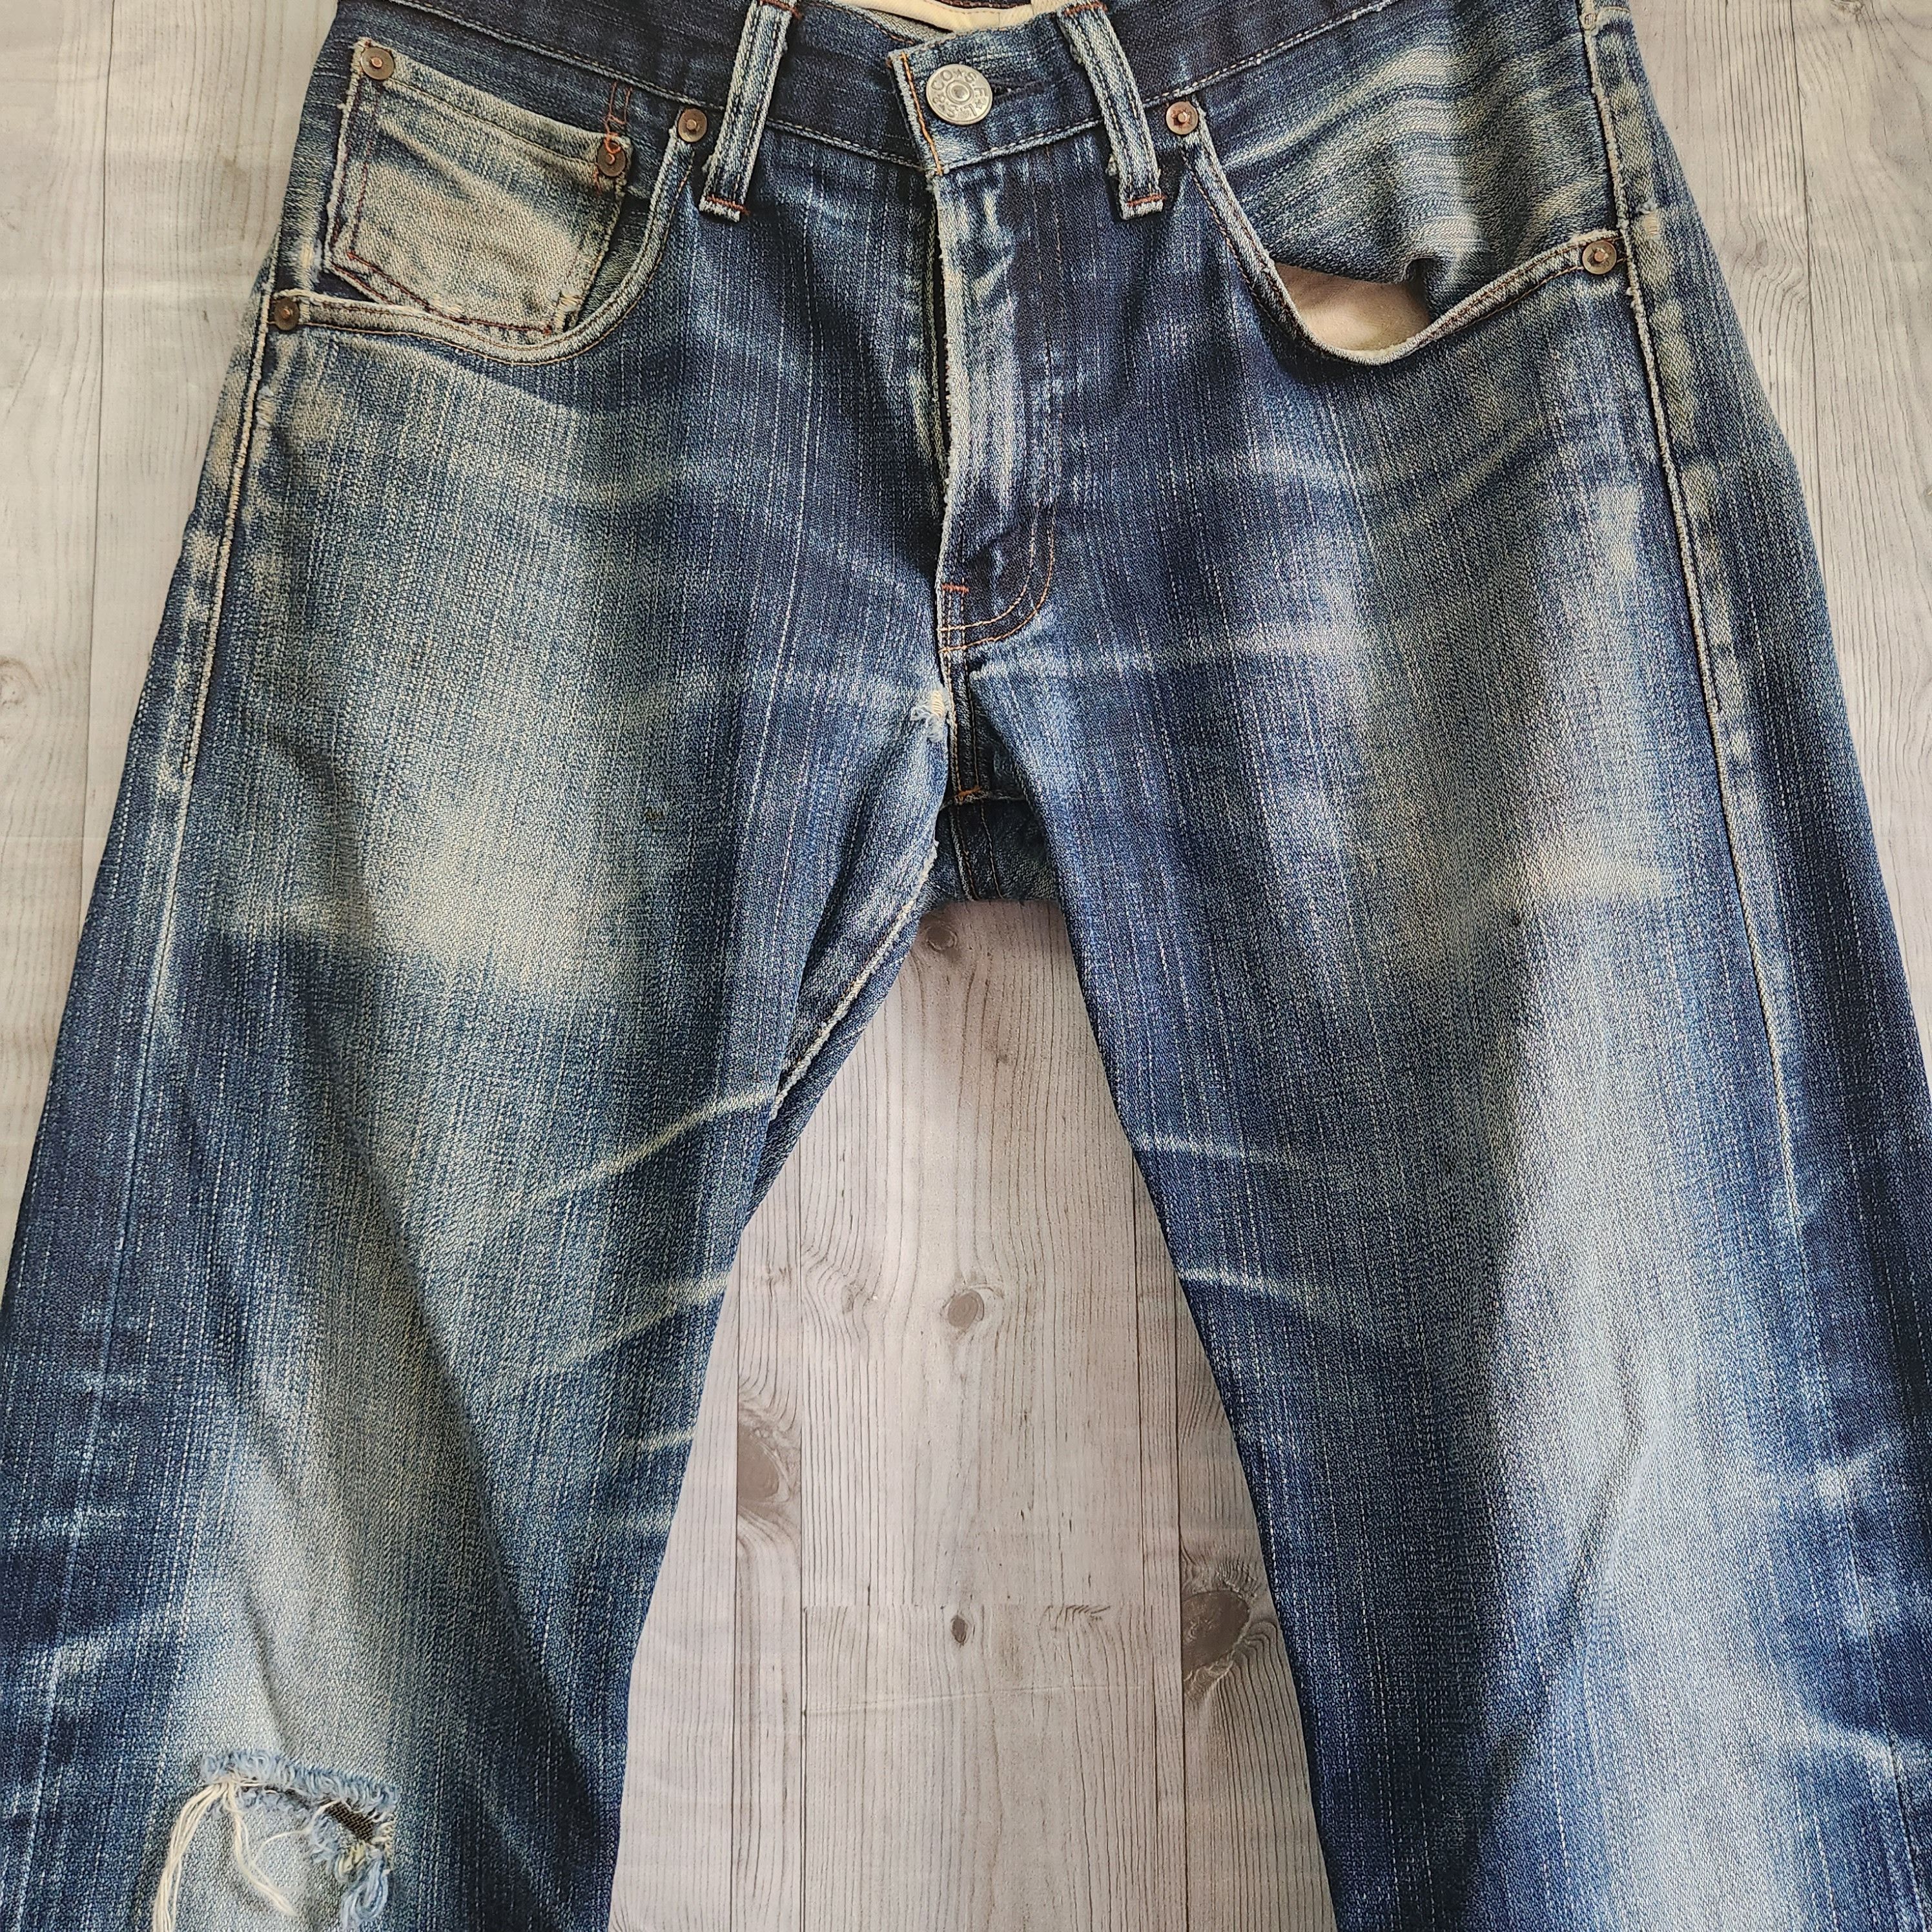 Levis 505 Premium Distressed Denim Jeans - 17